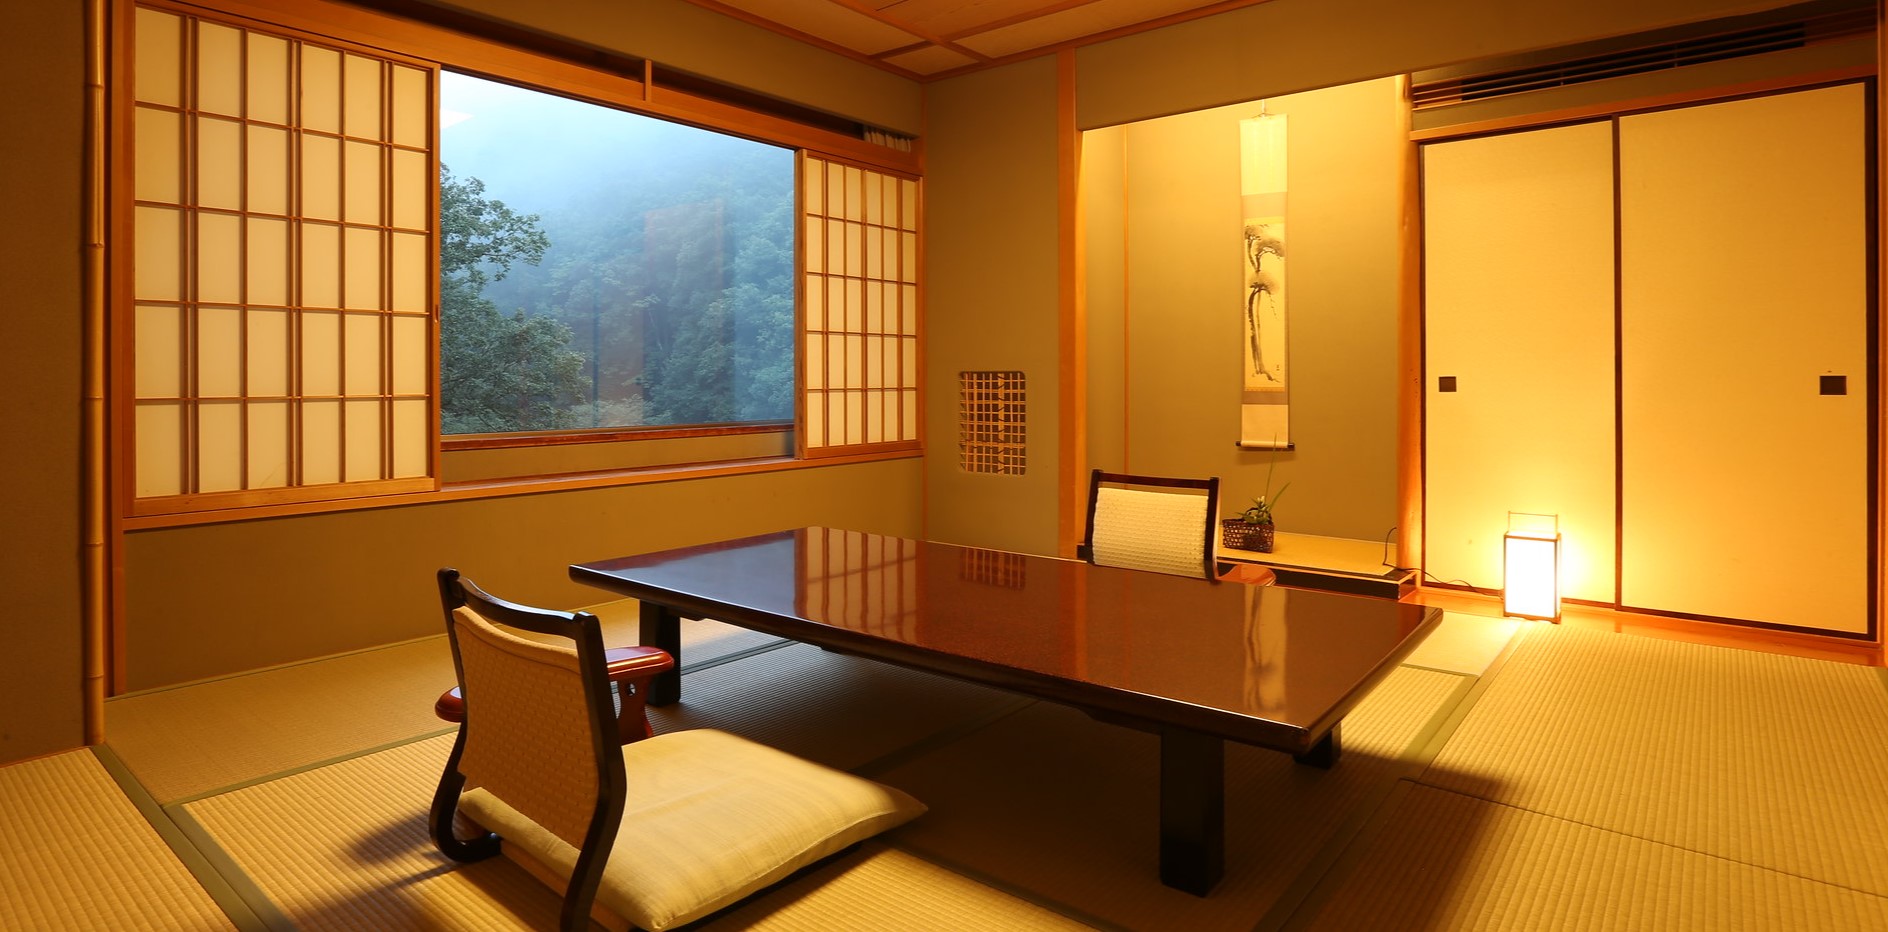 Оформление комнаты в японском стиле: минимализм в интерьере